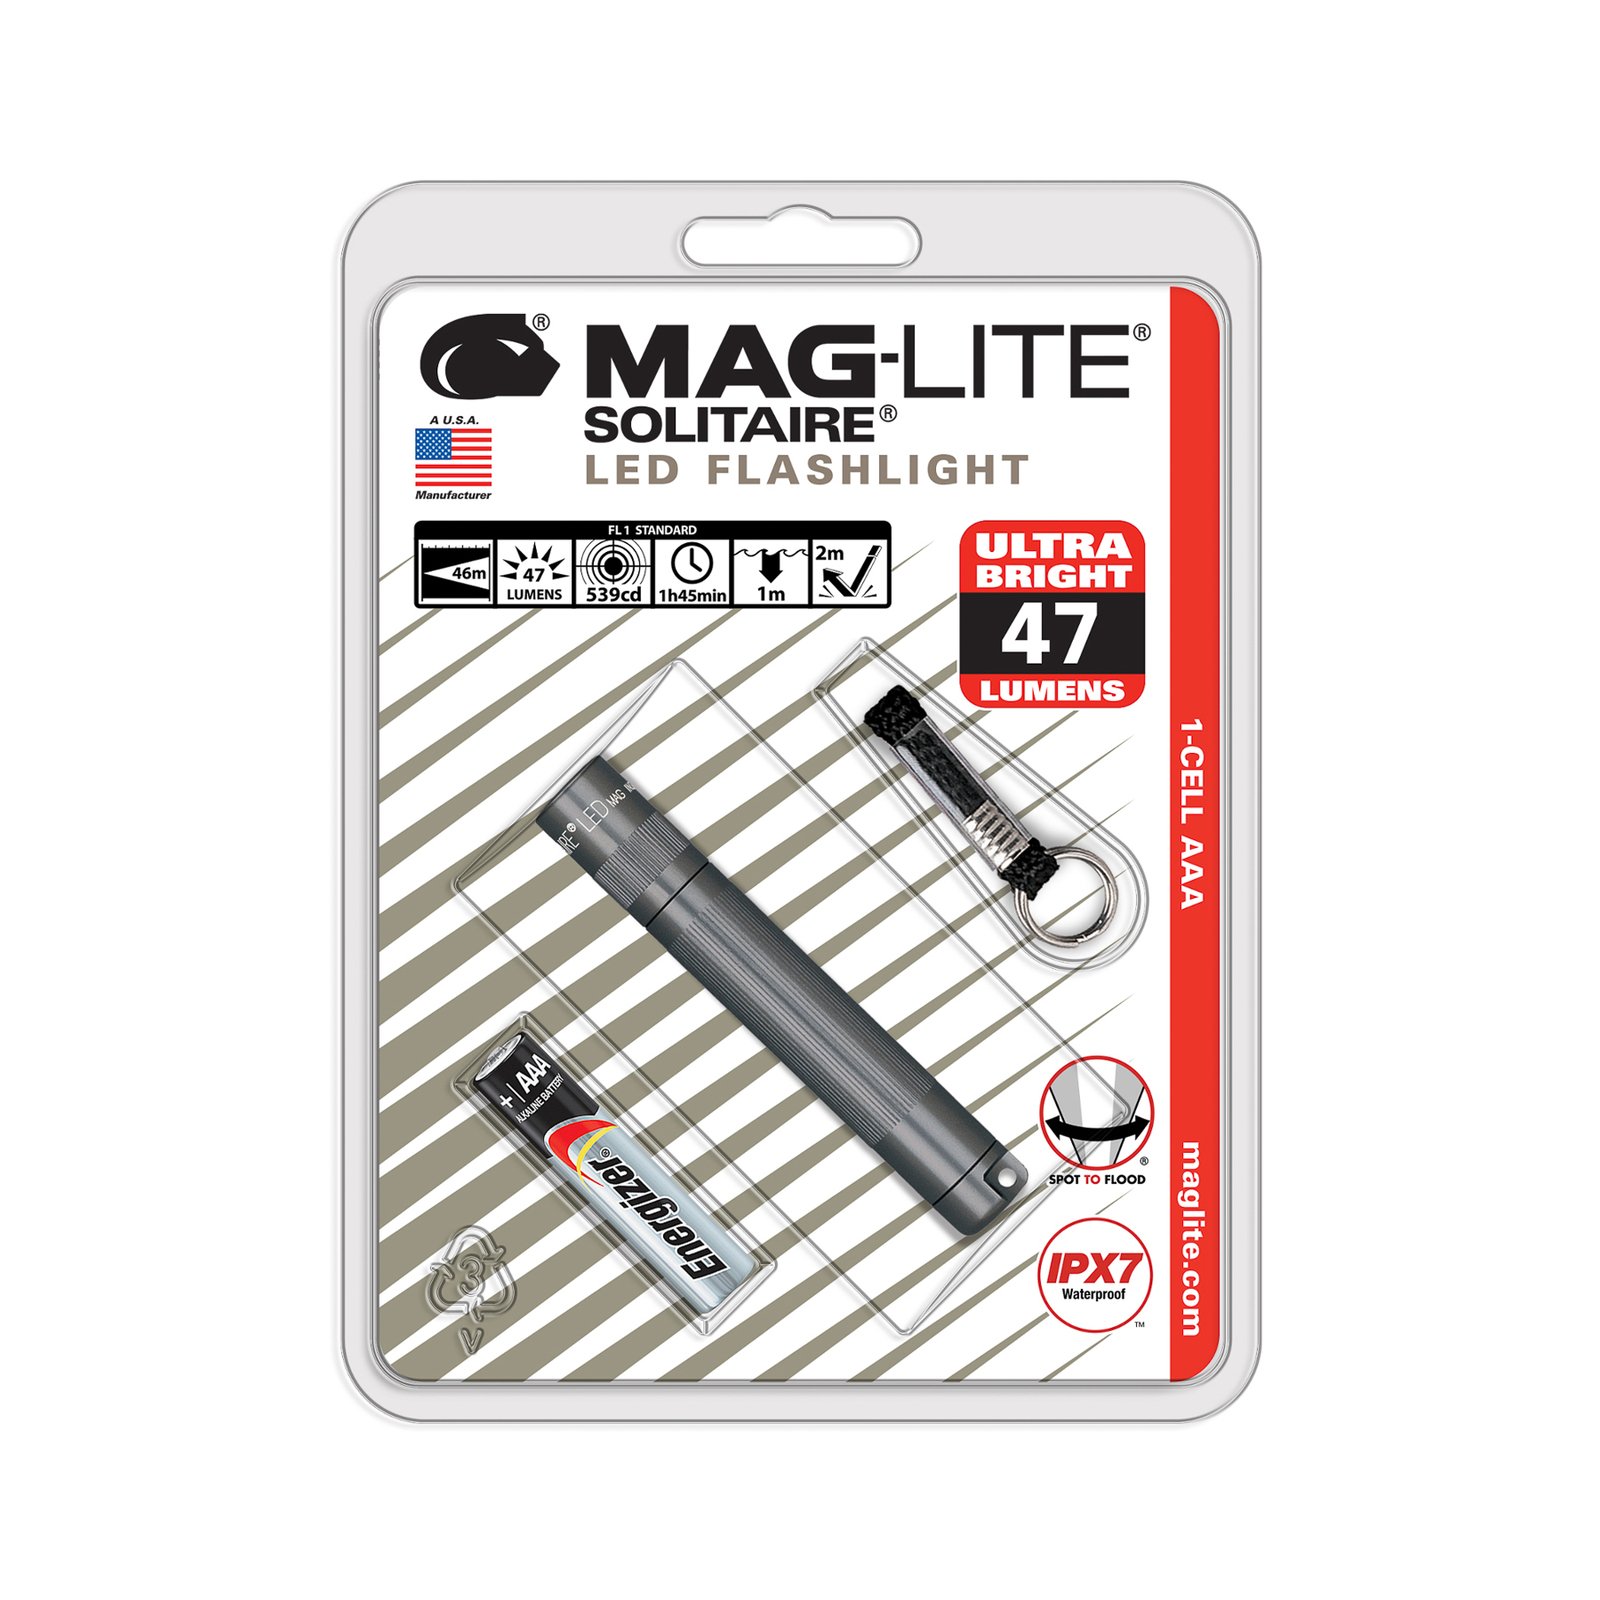 Svítilna Maglite LED Solitaire, 1 článek AAA, šedá